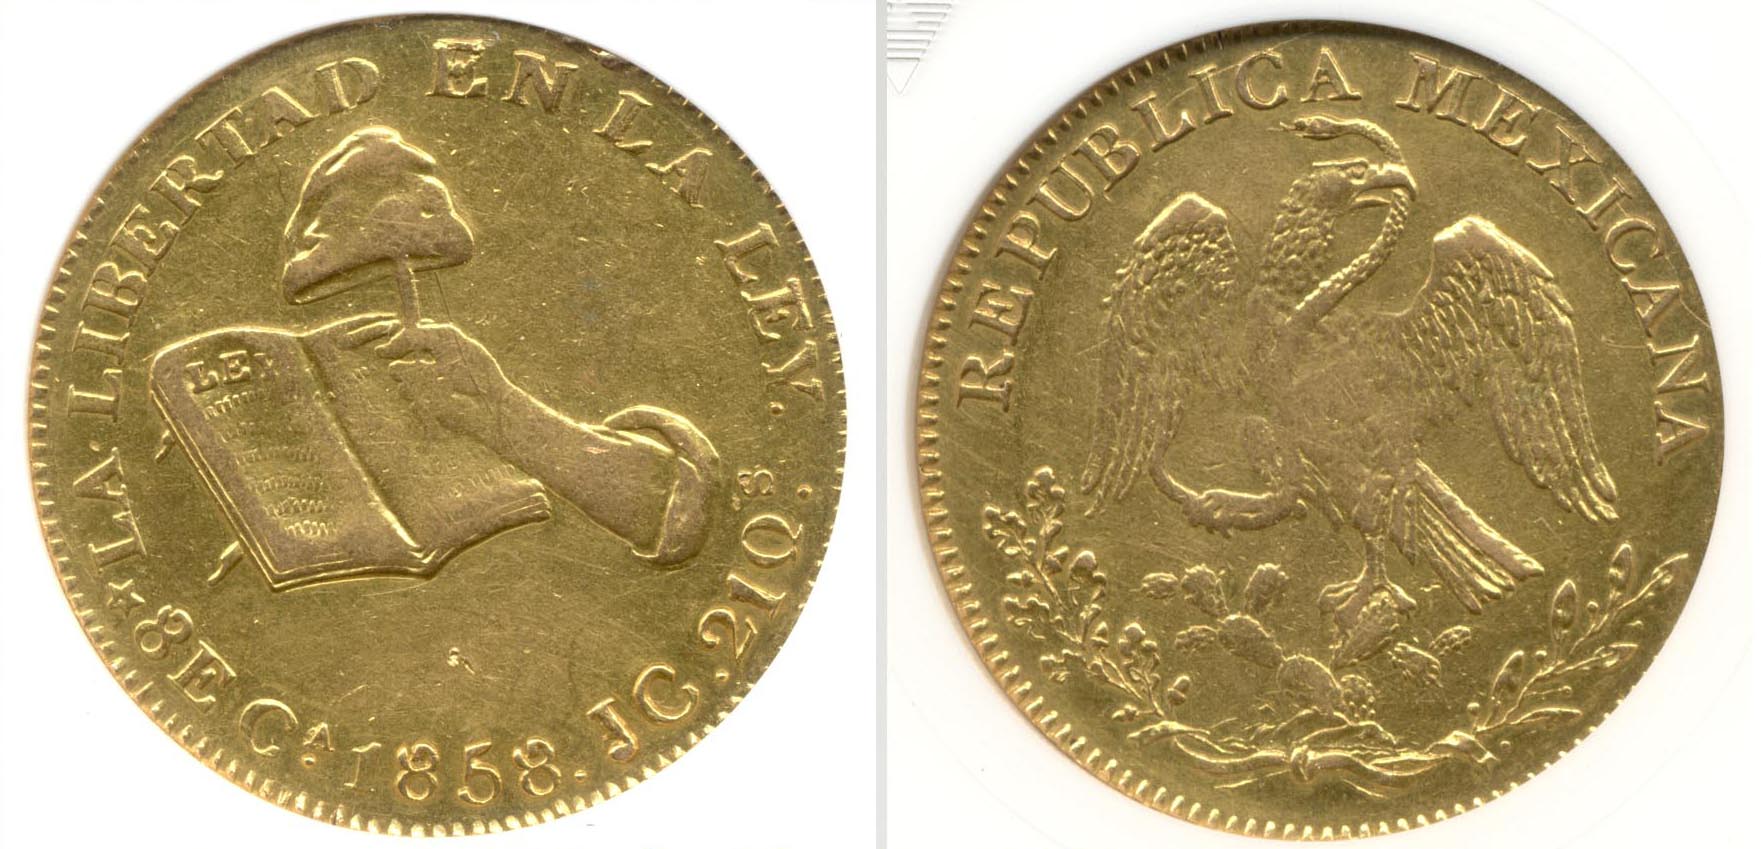 1858-Ca Mexico Gold 8 Escudos ANACS VF-20